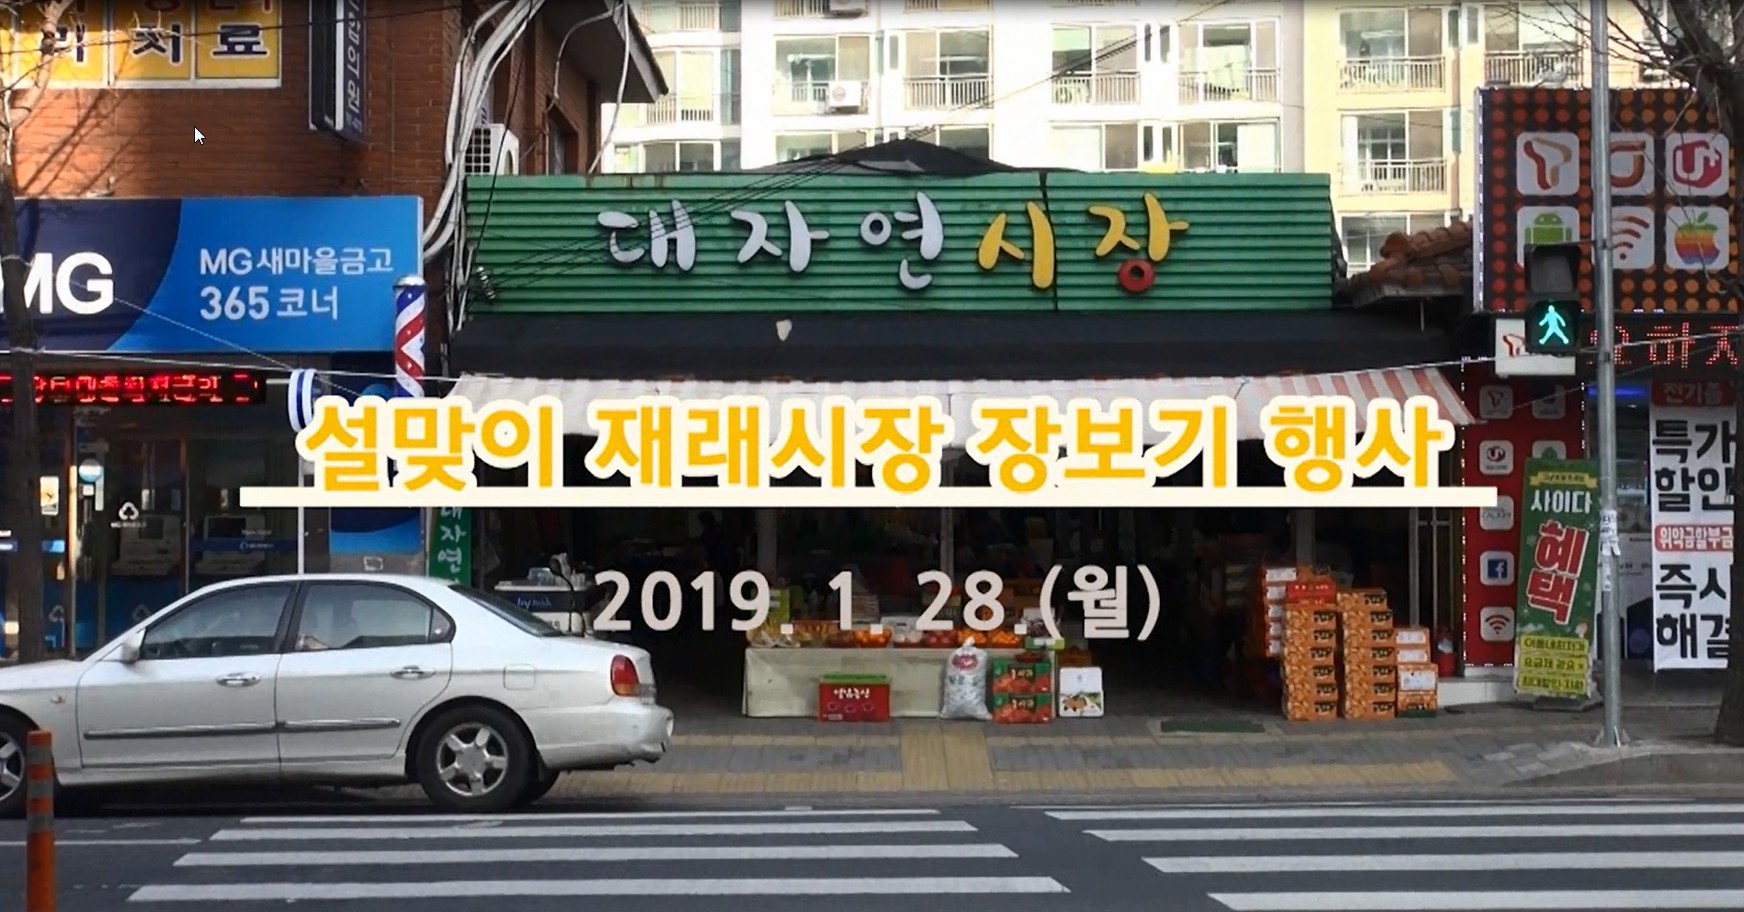  2019 설맞이 재래시장 장보기 행사